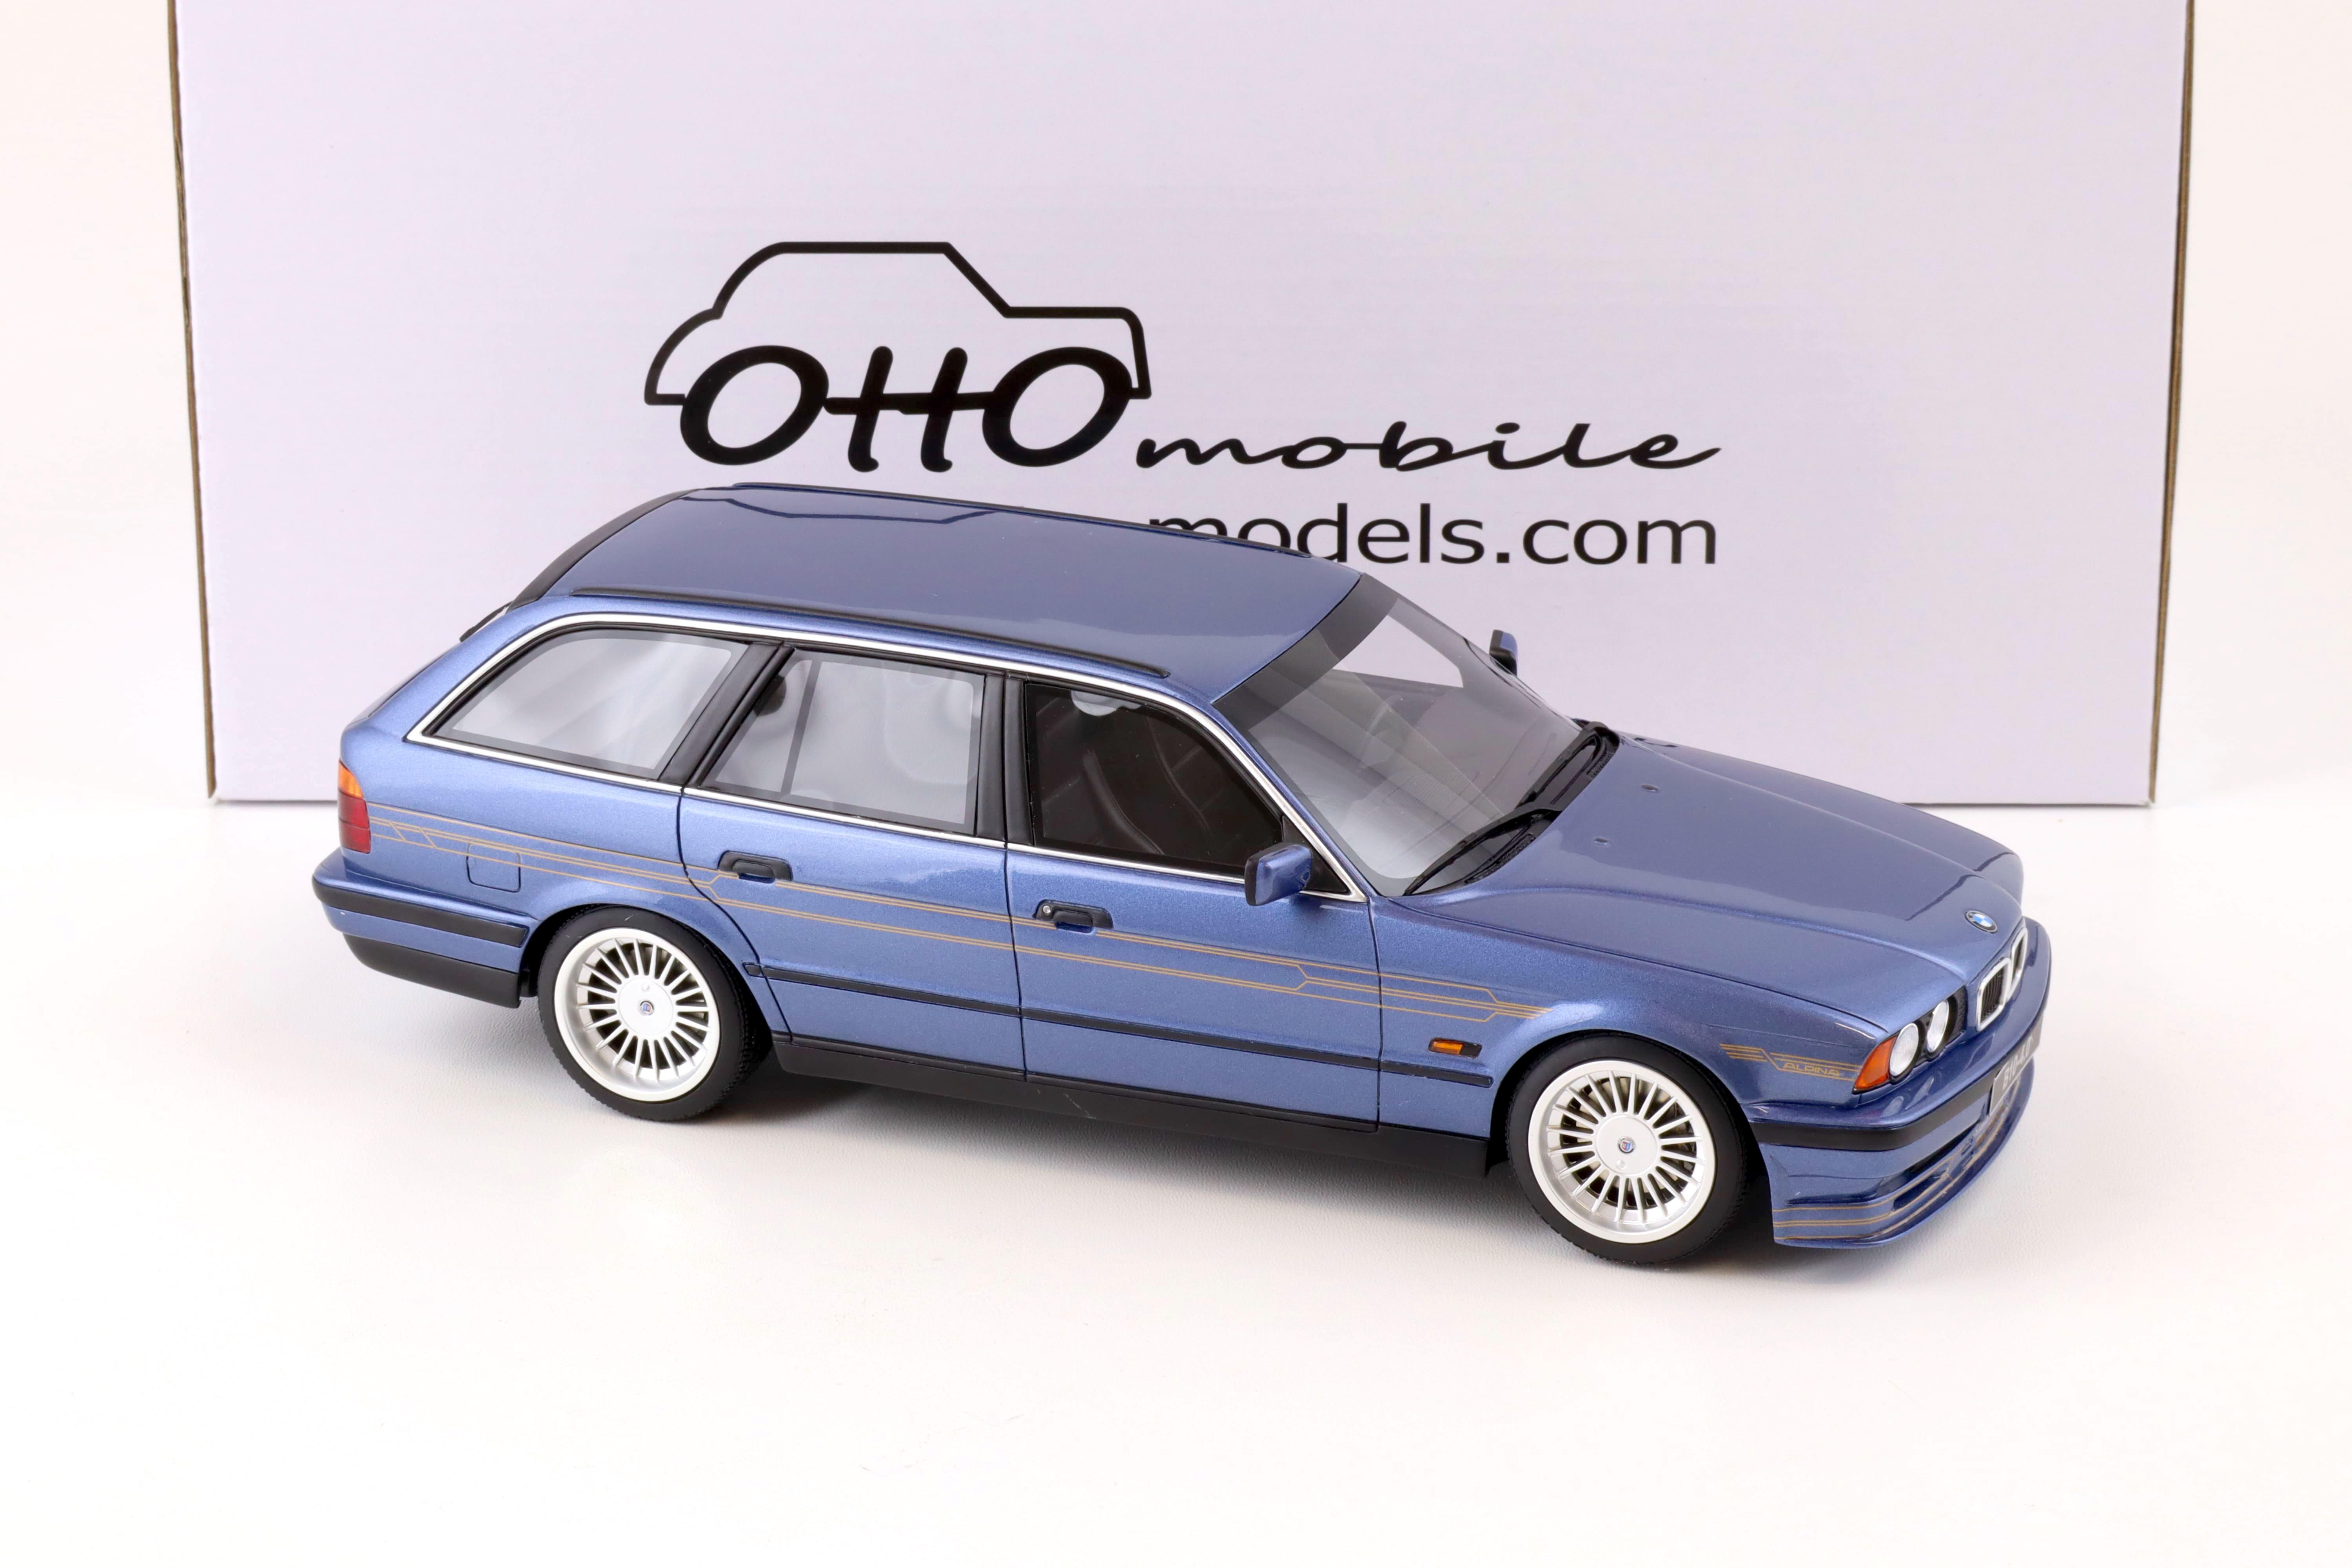 1:18 OTTO mobile OT944 BMW Alpina B10 E34 4.0 Touring blue metallic 1995